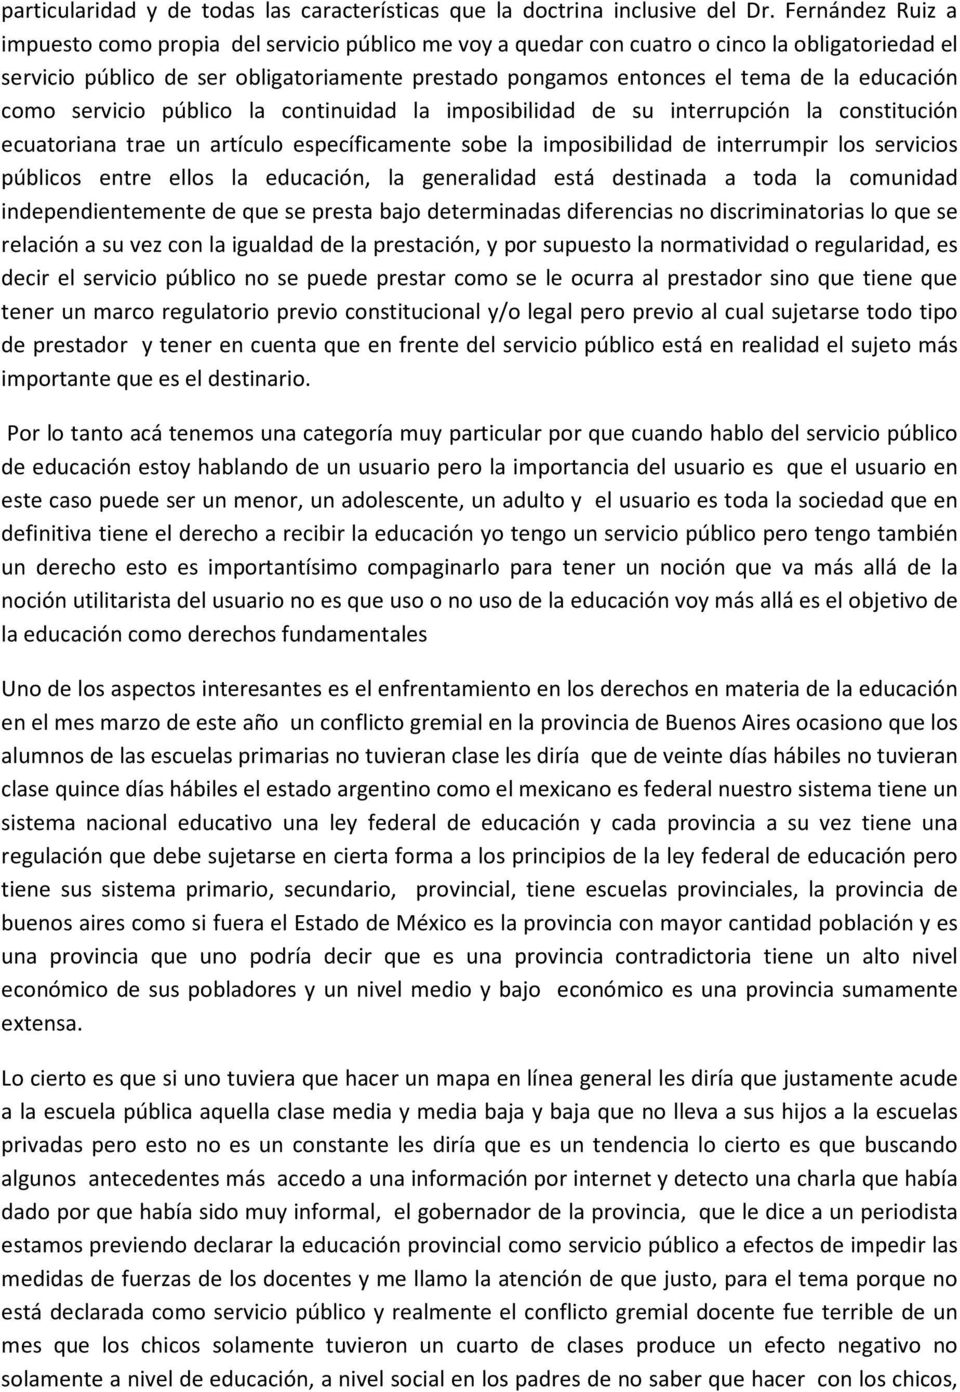 educación como servicio público la continuidad la imposibilidad de su interrupción la constitución ecuatoriana trae un artículo específicamente sobe la imposibilidad de interrumpir los servicios